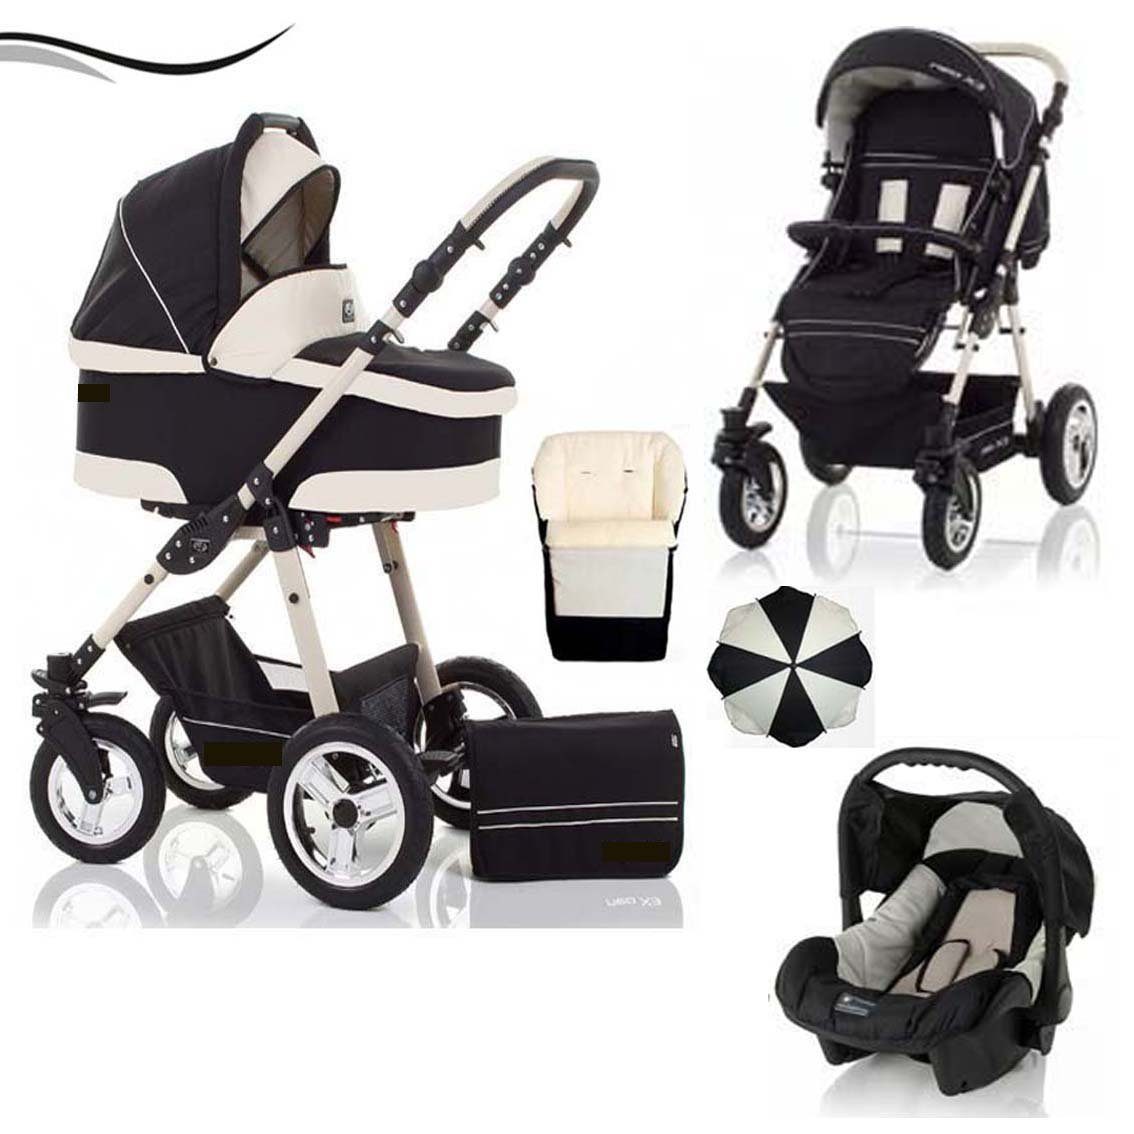 babies-on-wheels Kombi-Kinderwagen City Star 5 in 1 inkl. Autositz, Sonnenschirm und Fußsack - 18 Teile - von Geburt bis 4 Jahre in 16 Farben Schwarz-Creme